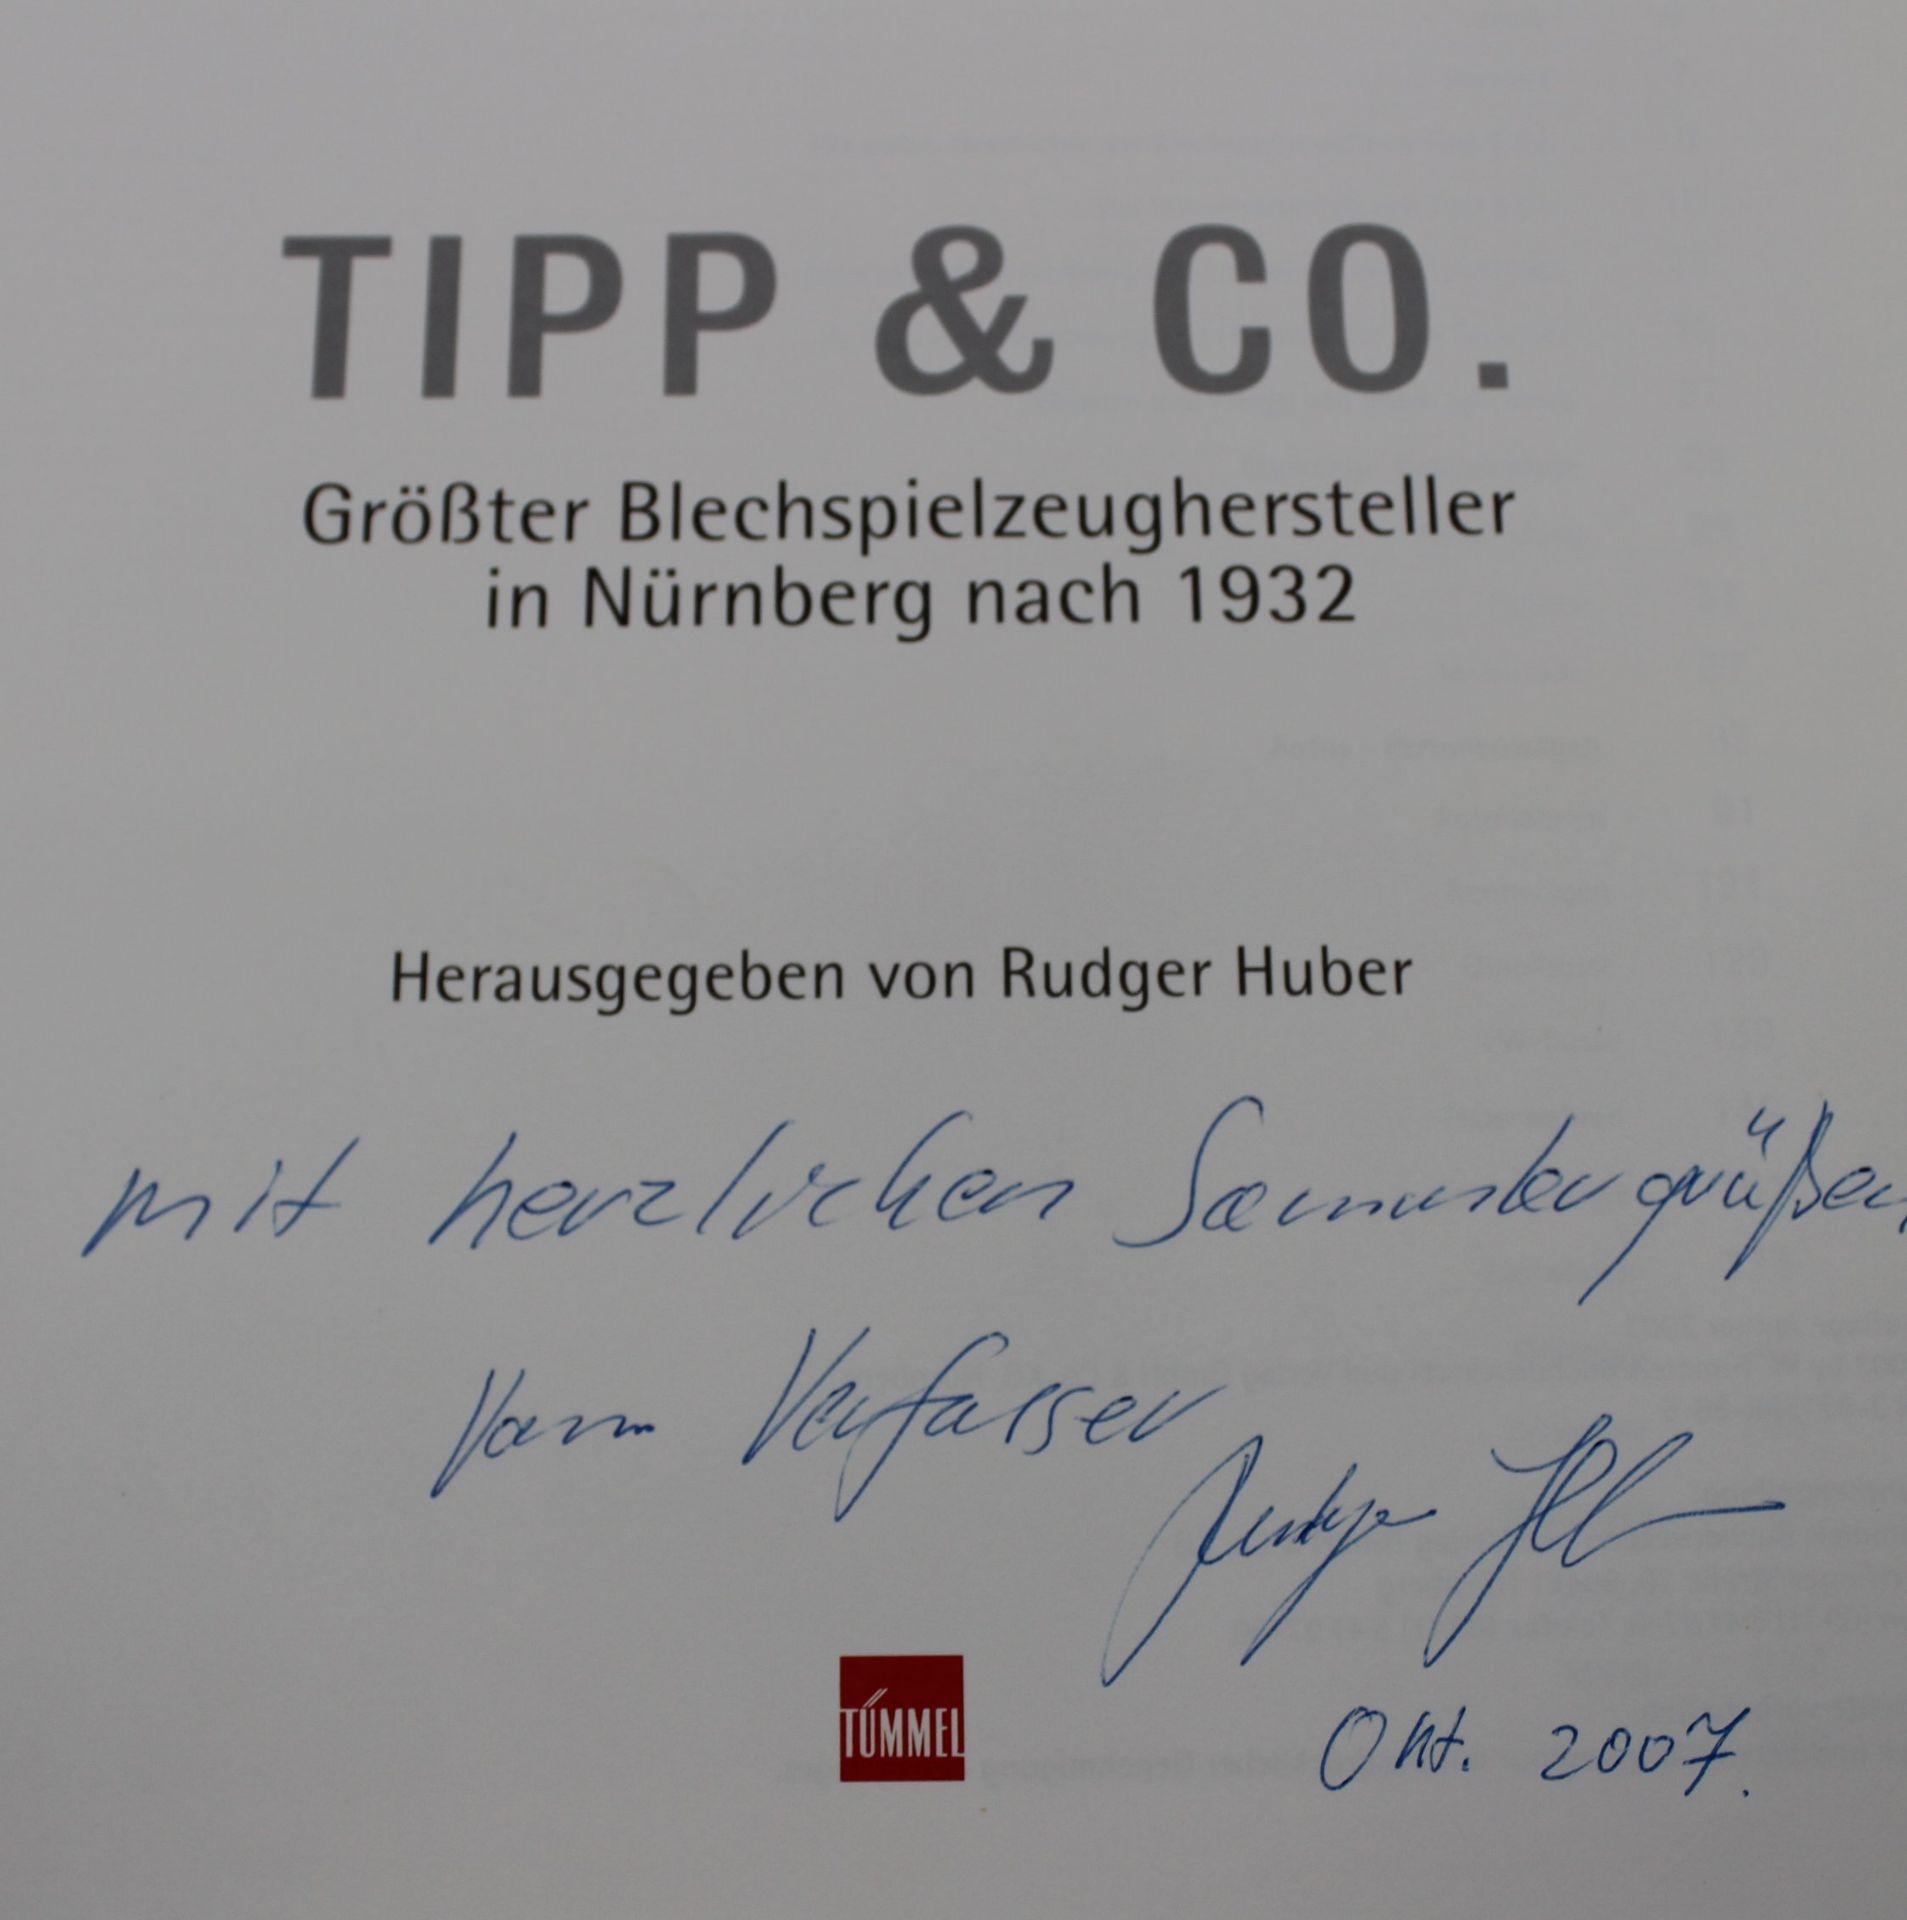 Rudger Huber, Tipp & Co. - Größter Blechspielzeughersteller in Nürnberg nach 1932, 2003, Widmung de - Bild 2 aus 6